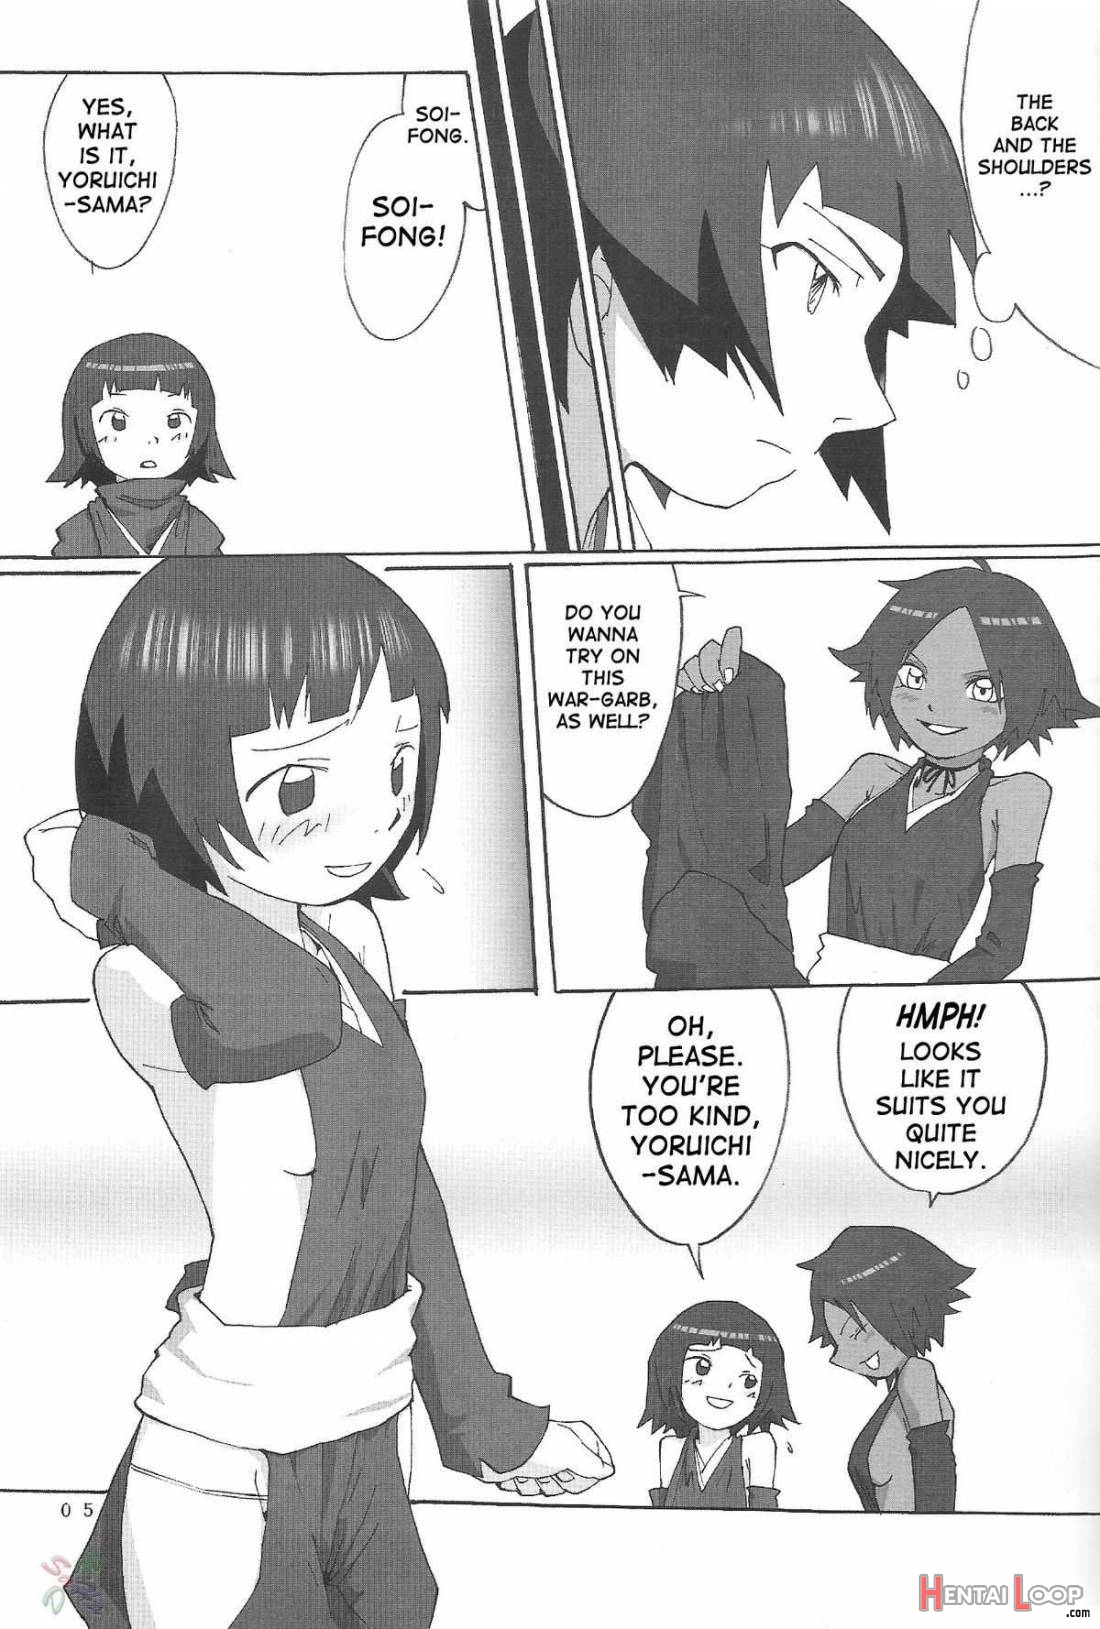 Yoruichi-sama page 4